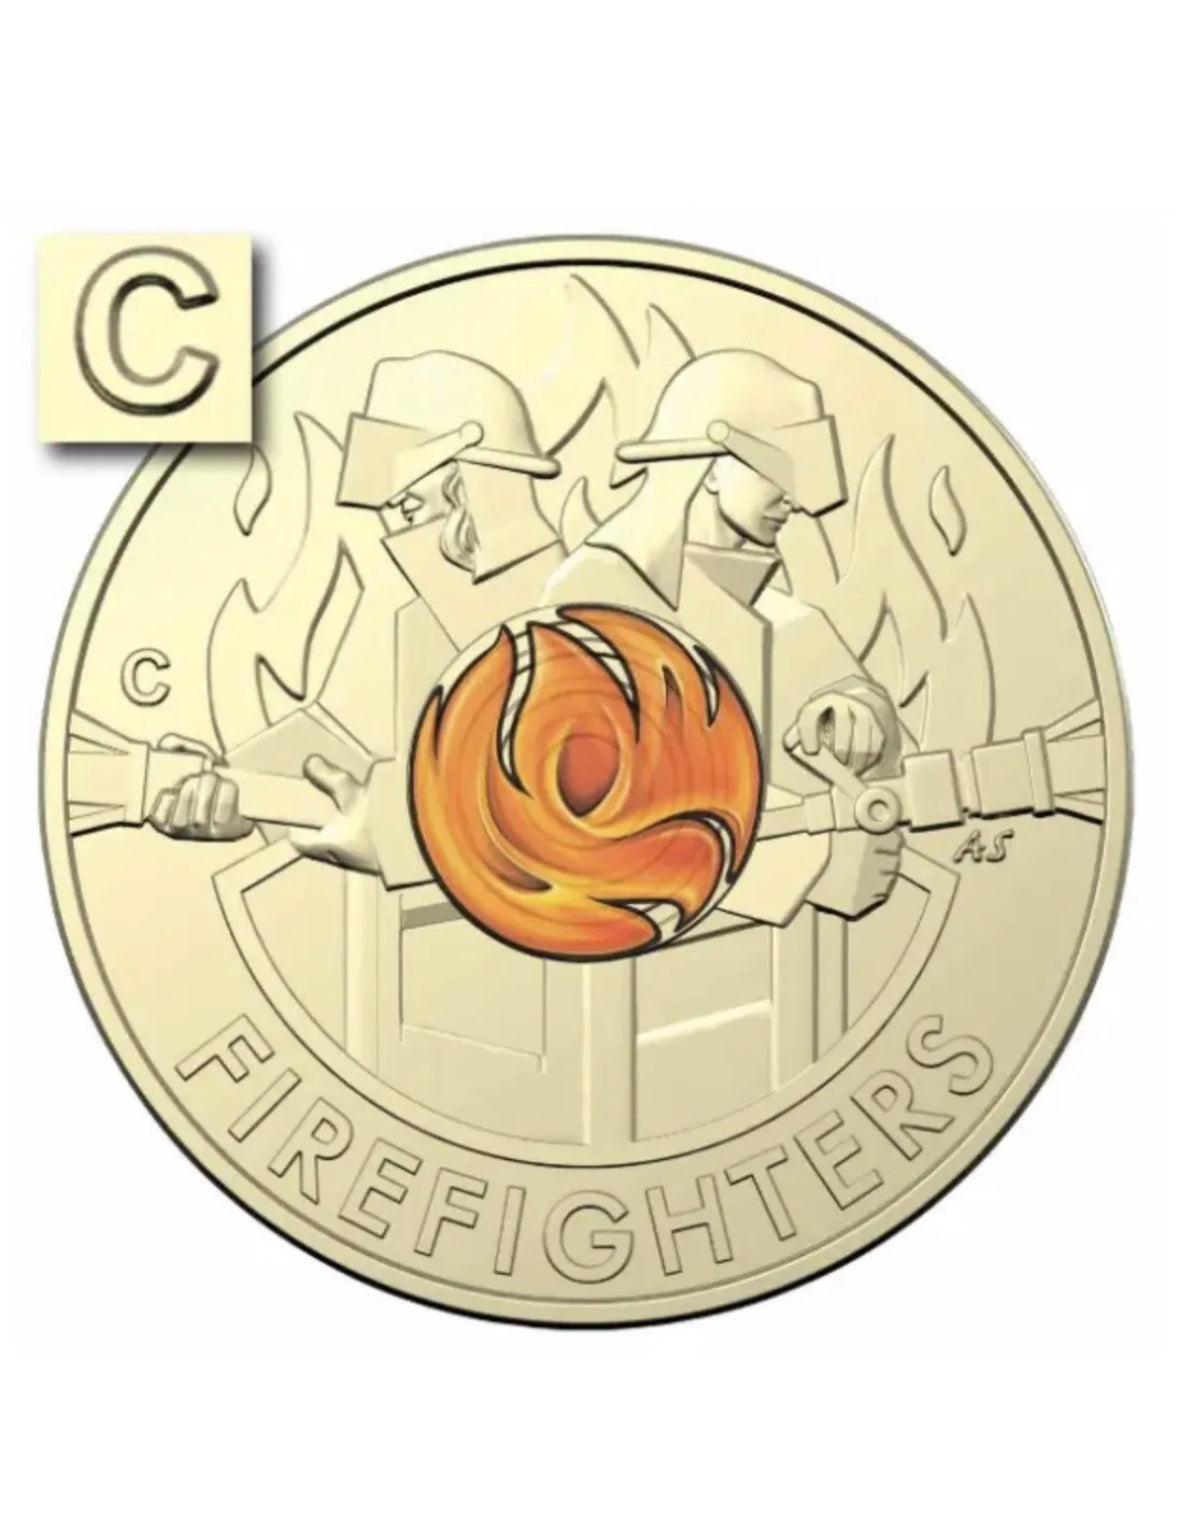 2020 Australia’s Brave Firefighter $2 'C' Mintmark Coin